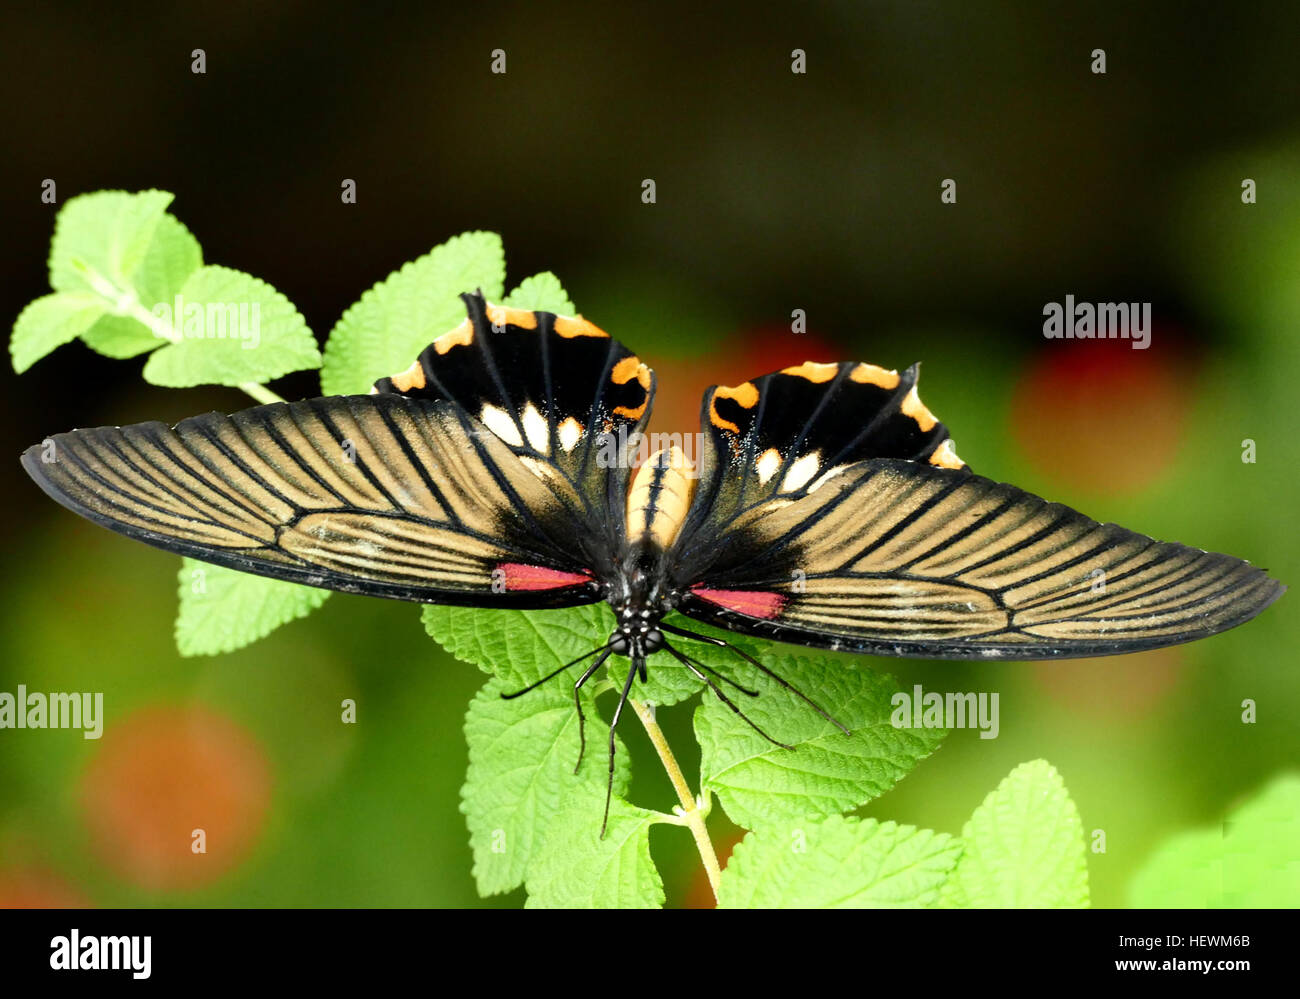 Papillons machaons sont grandes, papillons colorés dans la famille des Papilionidae, et comprennent plus de 550 espèces.Si la majorité sont des scieries, des membres de la famille vivent sur tous les continents sauf l'Antarctique. La famille comprend les plus grands papillons du monde, les ornithoptères Ornithoptera du genre Banque D'Images